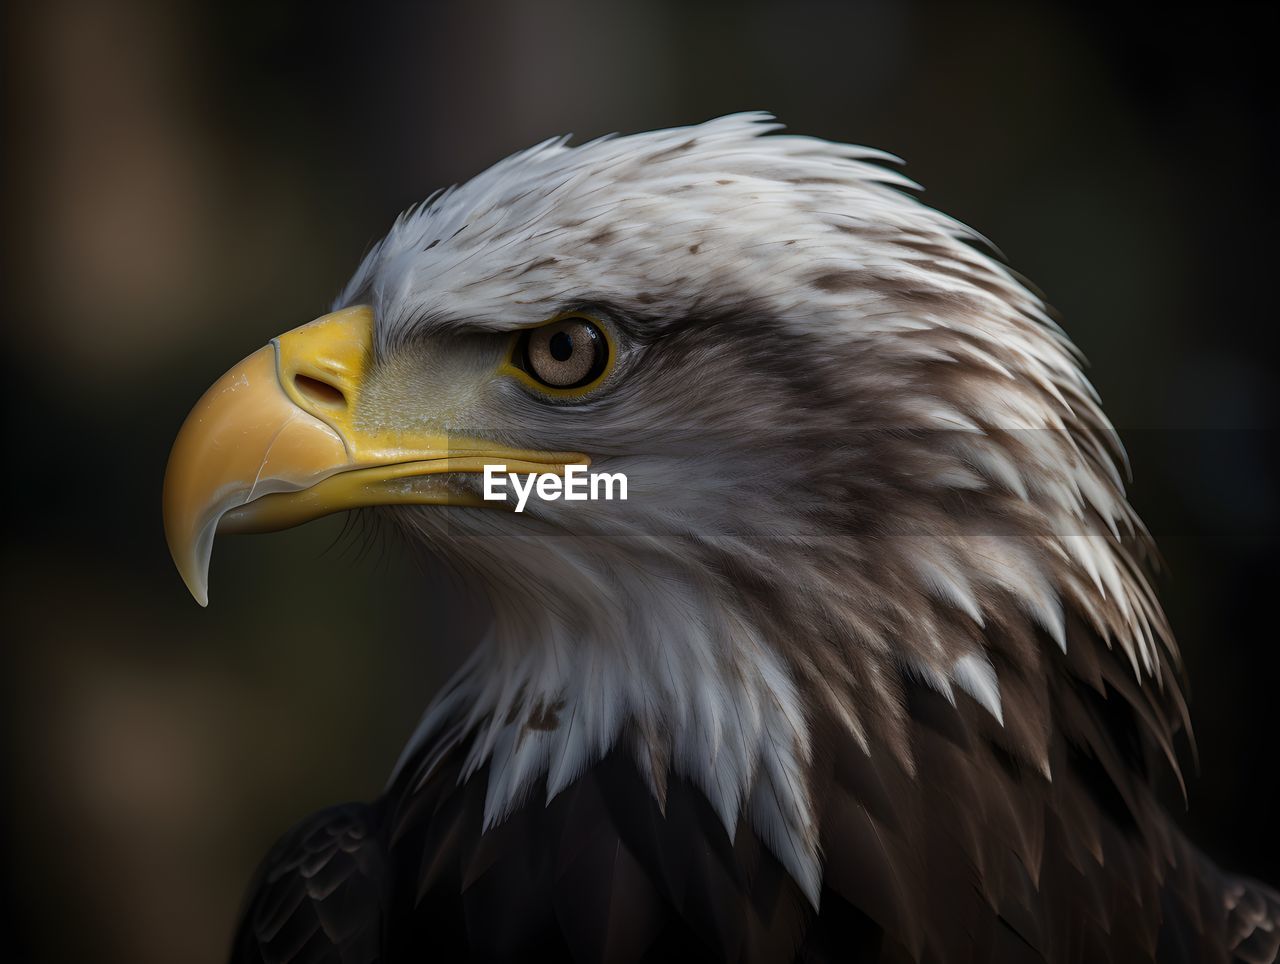 close-up portrait of eagle